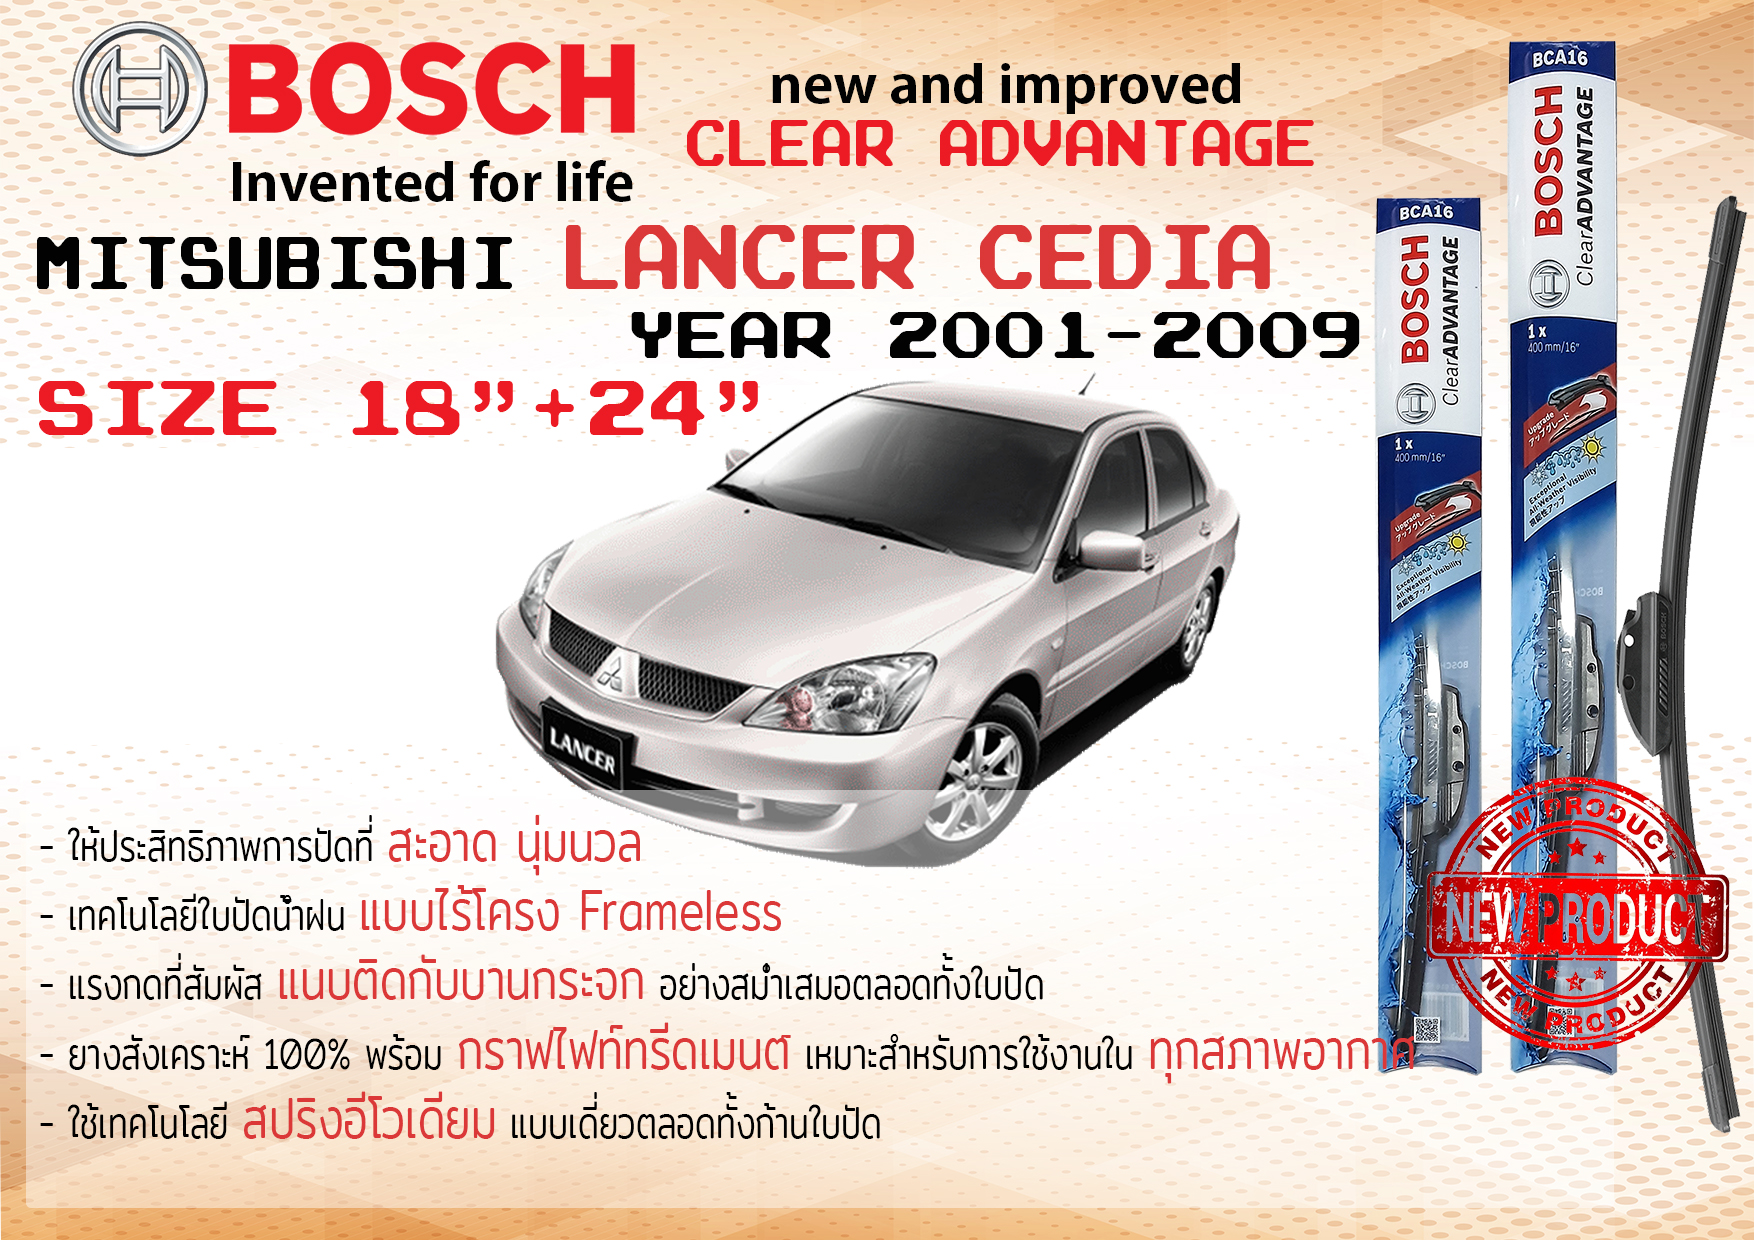 ใบปัดน้ำฝน คู่หน้า Bosch Clear Advantage frameless ก้านอ่อน ขนาด 18”+24” สำหรับรถ Mitsubishi LANCER Cedia ปี 2001-2009 ปี 01,02,03,04,05,06,07,08,09 มิตซูบิชิ แลนเซอร์ ซีเดีย ทนแสง UV